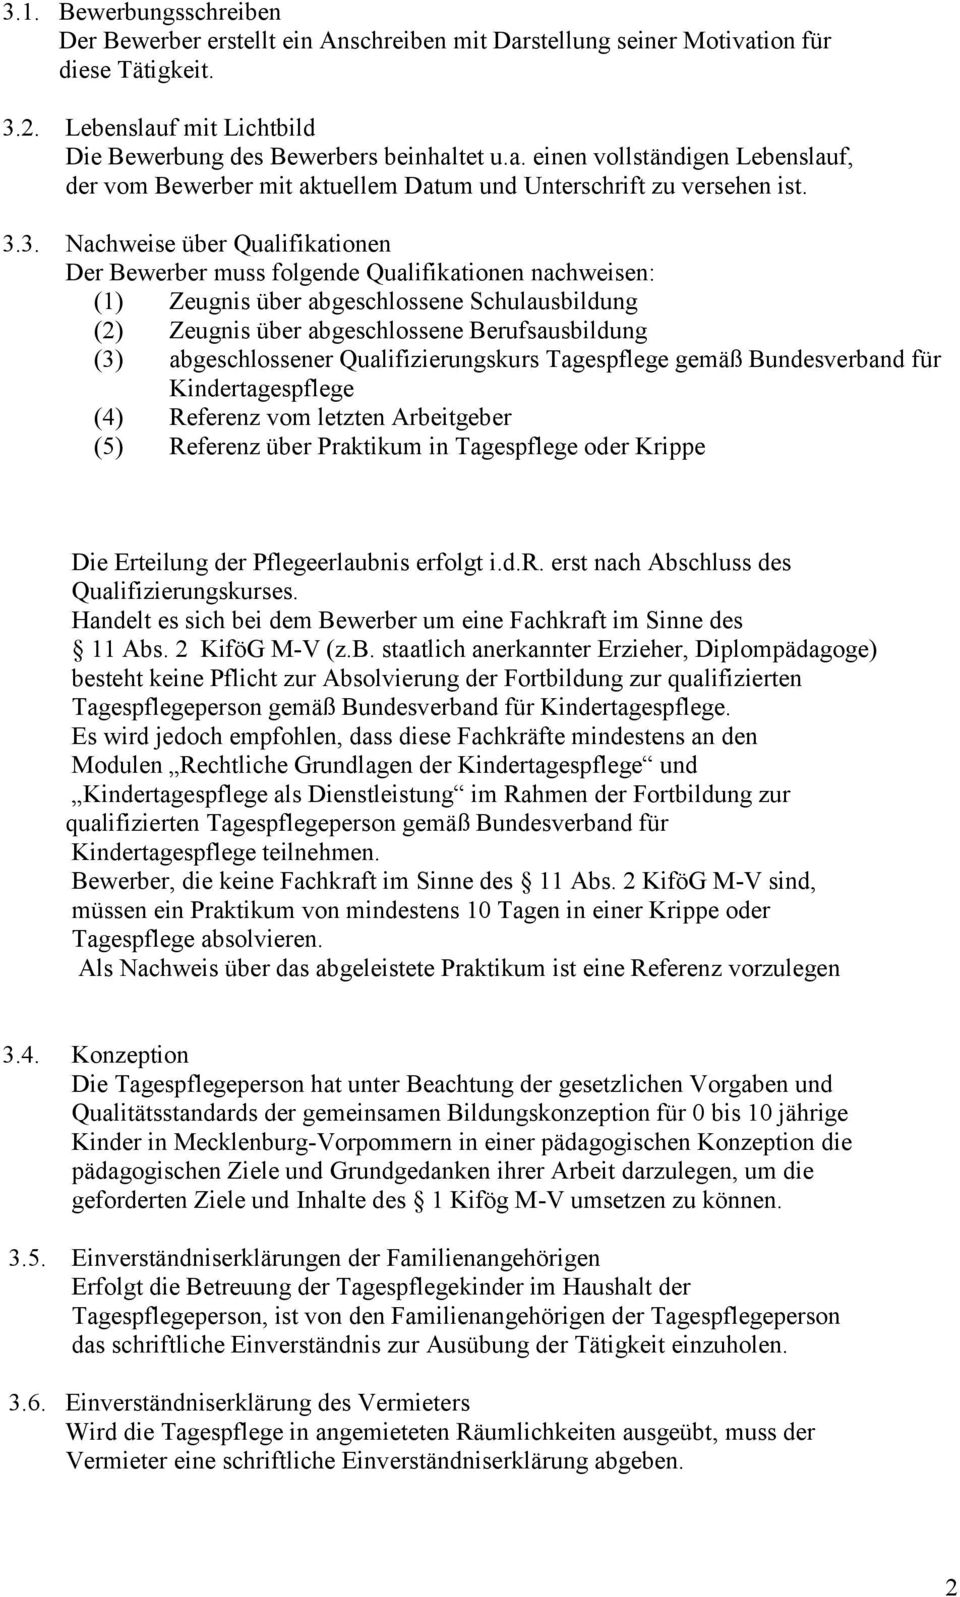 Kriterien Fur Die Erteilung Der Pflegeerlaubnis Fur Kindertagespflegepersonen Im Landkreis Vorpommern Rugen Pdf Free Download